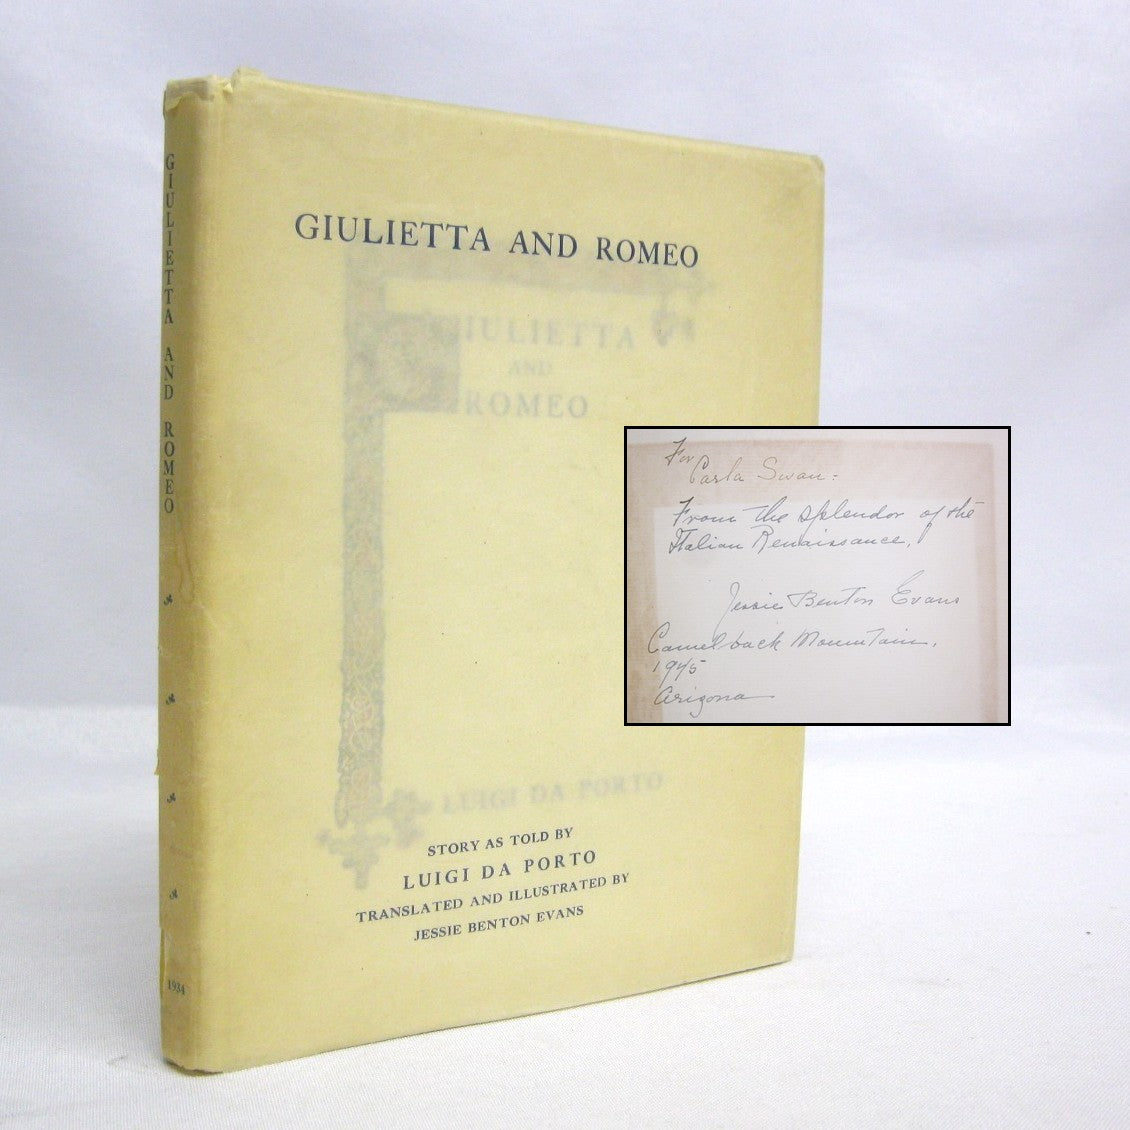 Giulietta and Romeo by Luigi da Porto